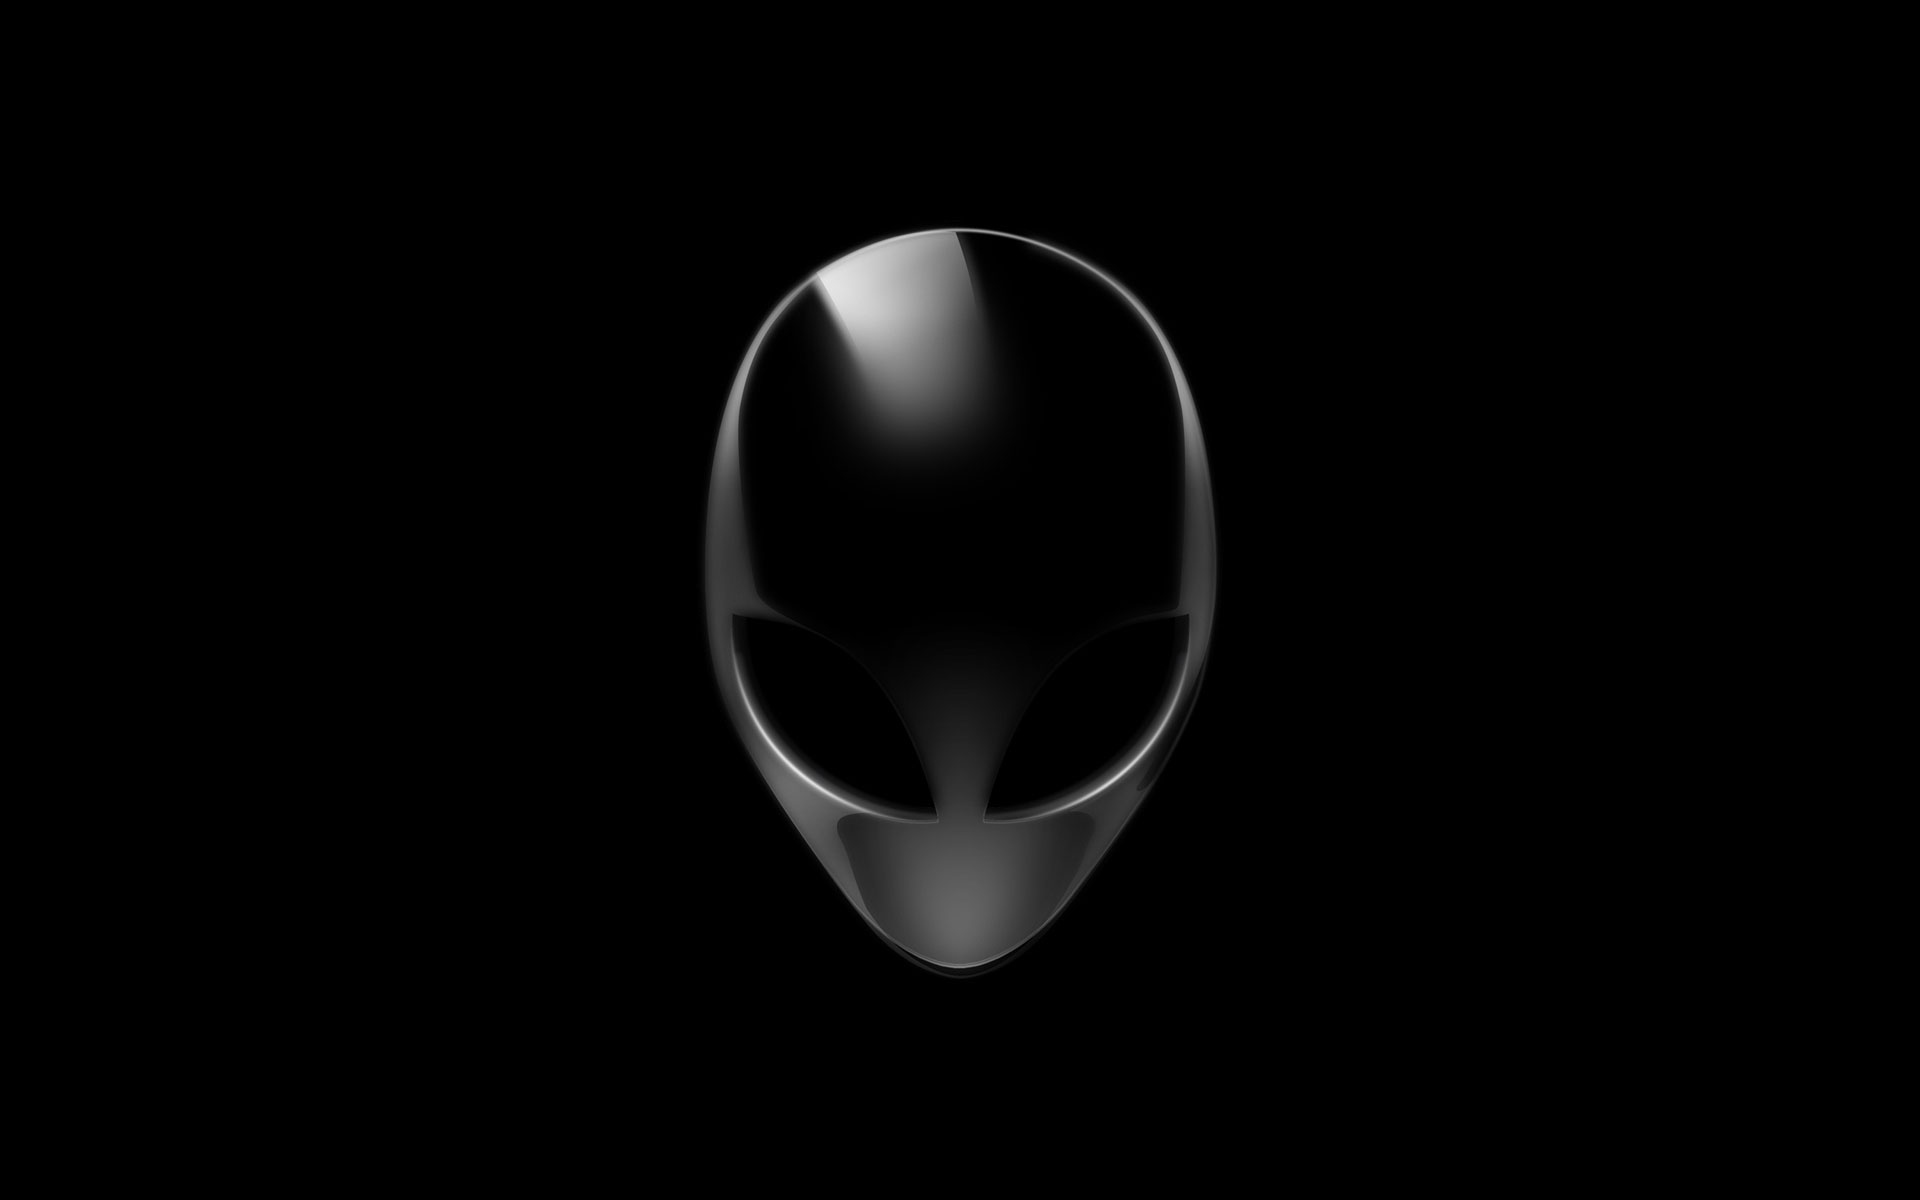 Logo Alienware HD là biểu tượng của sự tinh tế và độc đáo. Với hình ảnh này, người dùng sẽ được tận hưởng một cách hoàn hảo về vẻ đẹp của logo Alienware HD. Hãy cùng xem hình ảnh này để khám phá tinh hoa của thiết kế độc đáo này.